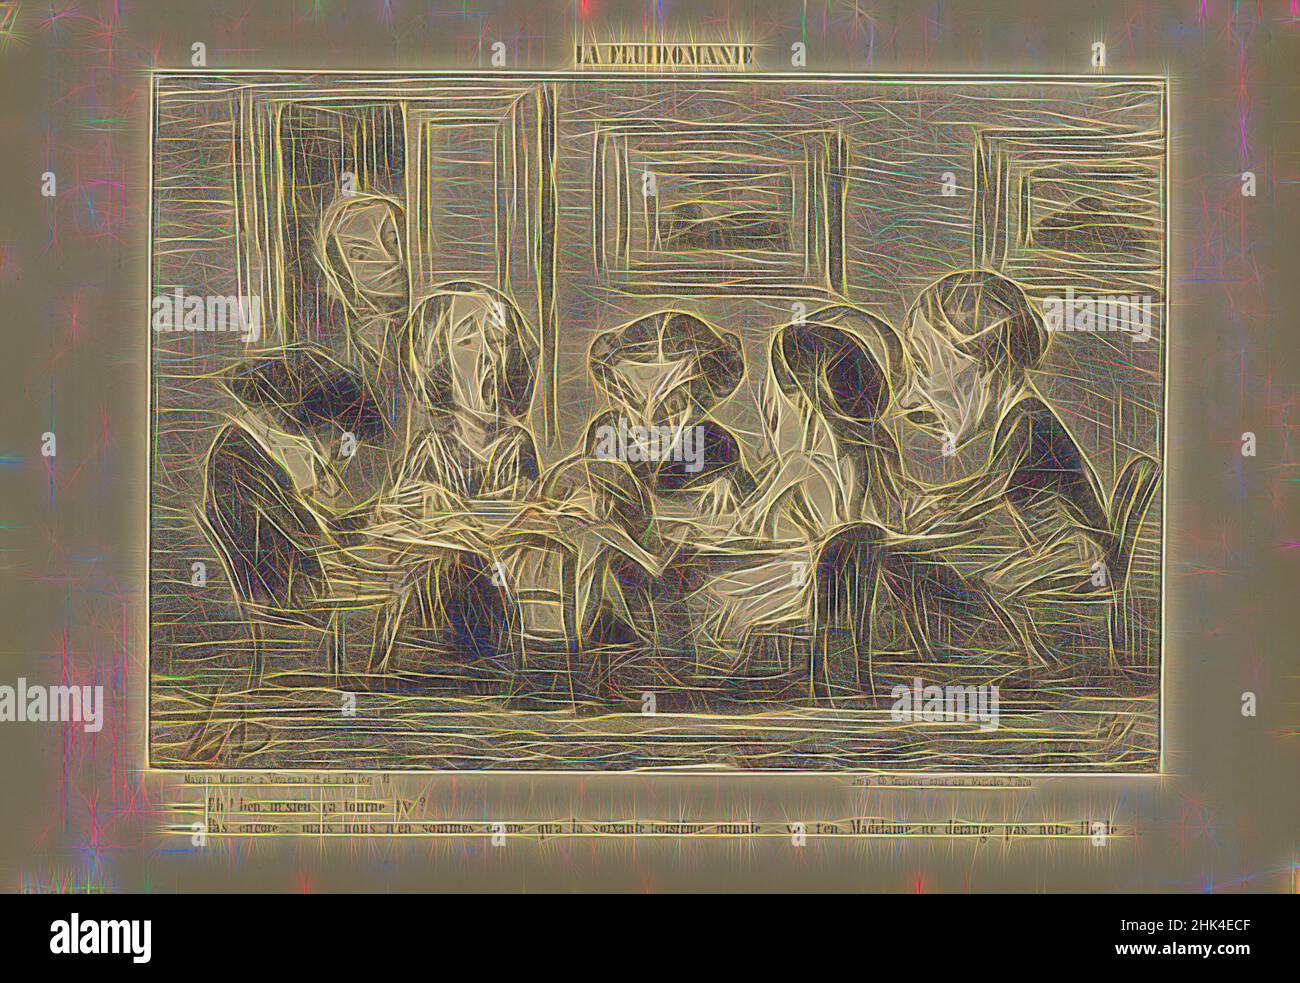 Ispirato da EH! Bien M'sieu, de Tourne T'y?..., Honoré Daumier, francese, 1808-1879, Litografia su carta da giornale, Francia, 16-17 maggio 1853, foglio: 9 9/16 x 14 pollici, 24,3 x 35,6 cm, reinventato da Artotop. L'arte classica reinventata con un tocco moderno. Design di calda e allegra luminosità e di raggi di luce. La fotografia si ispira al surrealismo e al futurismo, abbracciando l'energia dinamica della tecnologia moderna, del movimento, della velocità e rivoluzionando la cultura Foto Stock